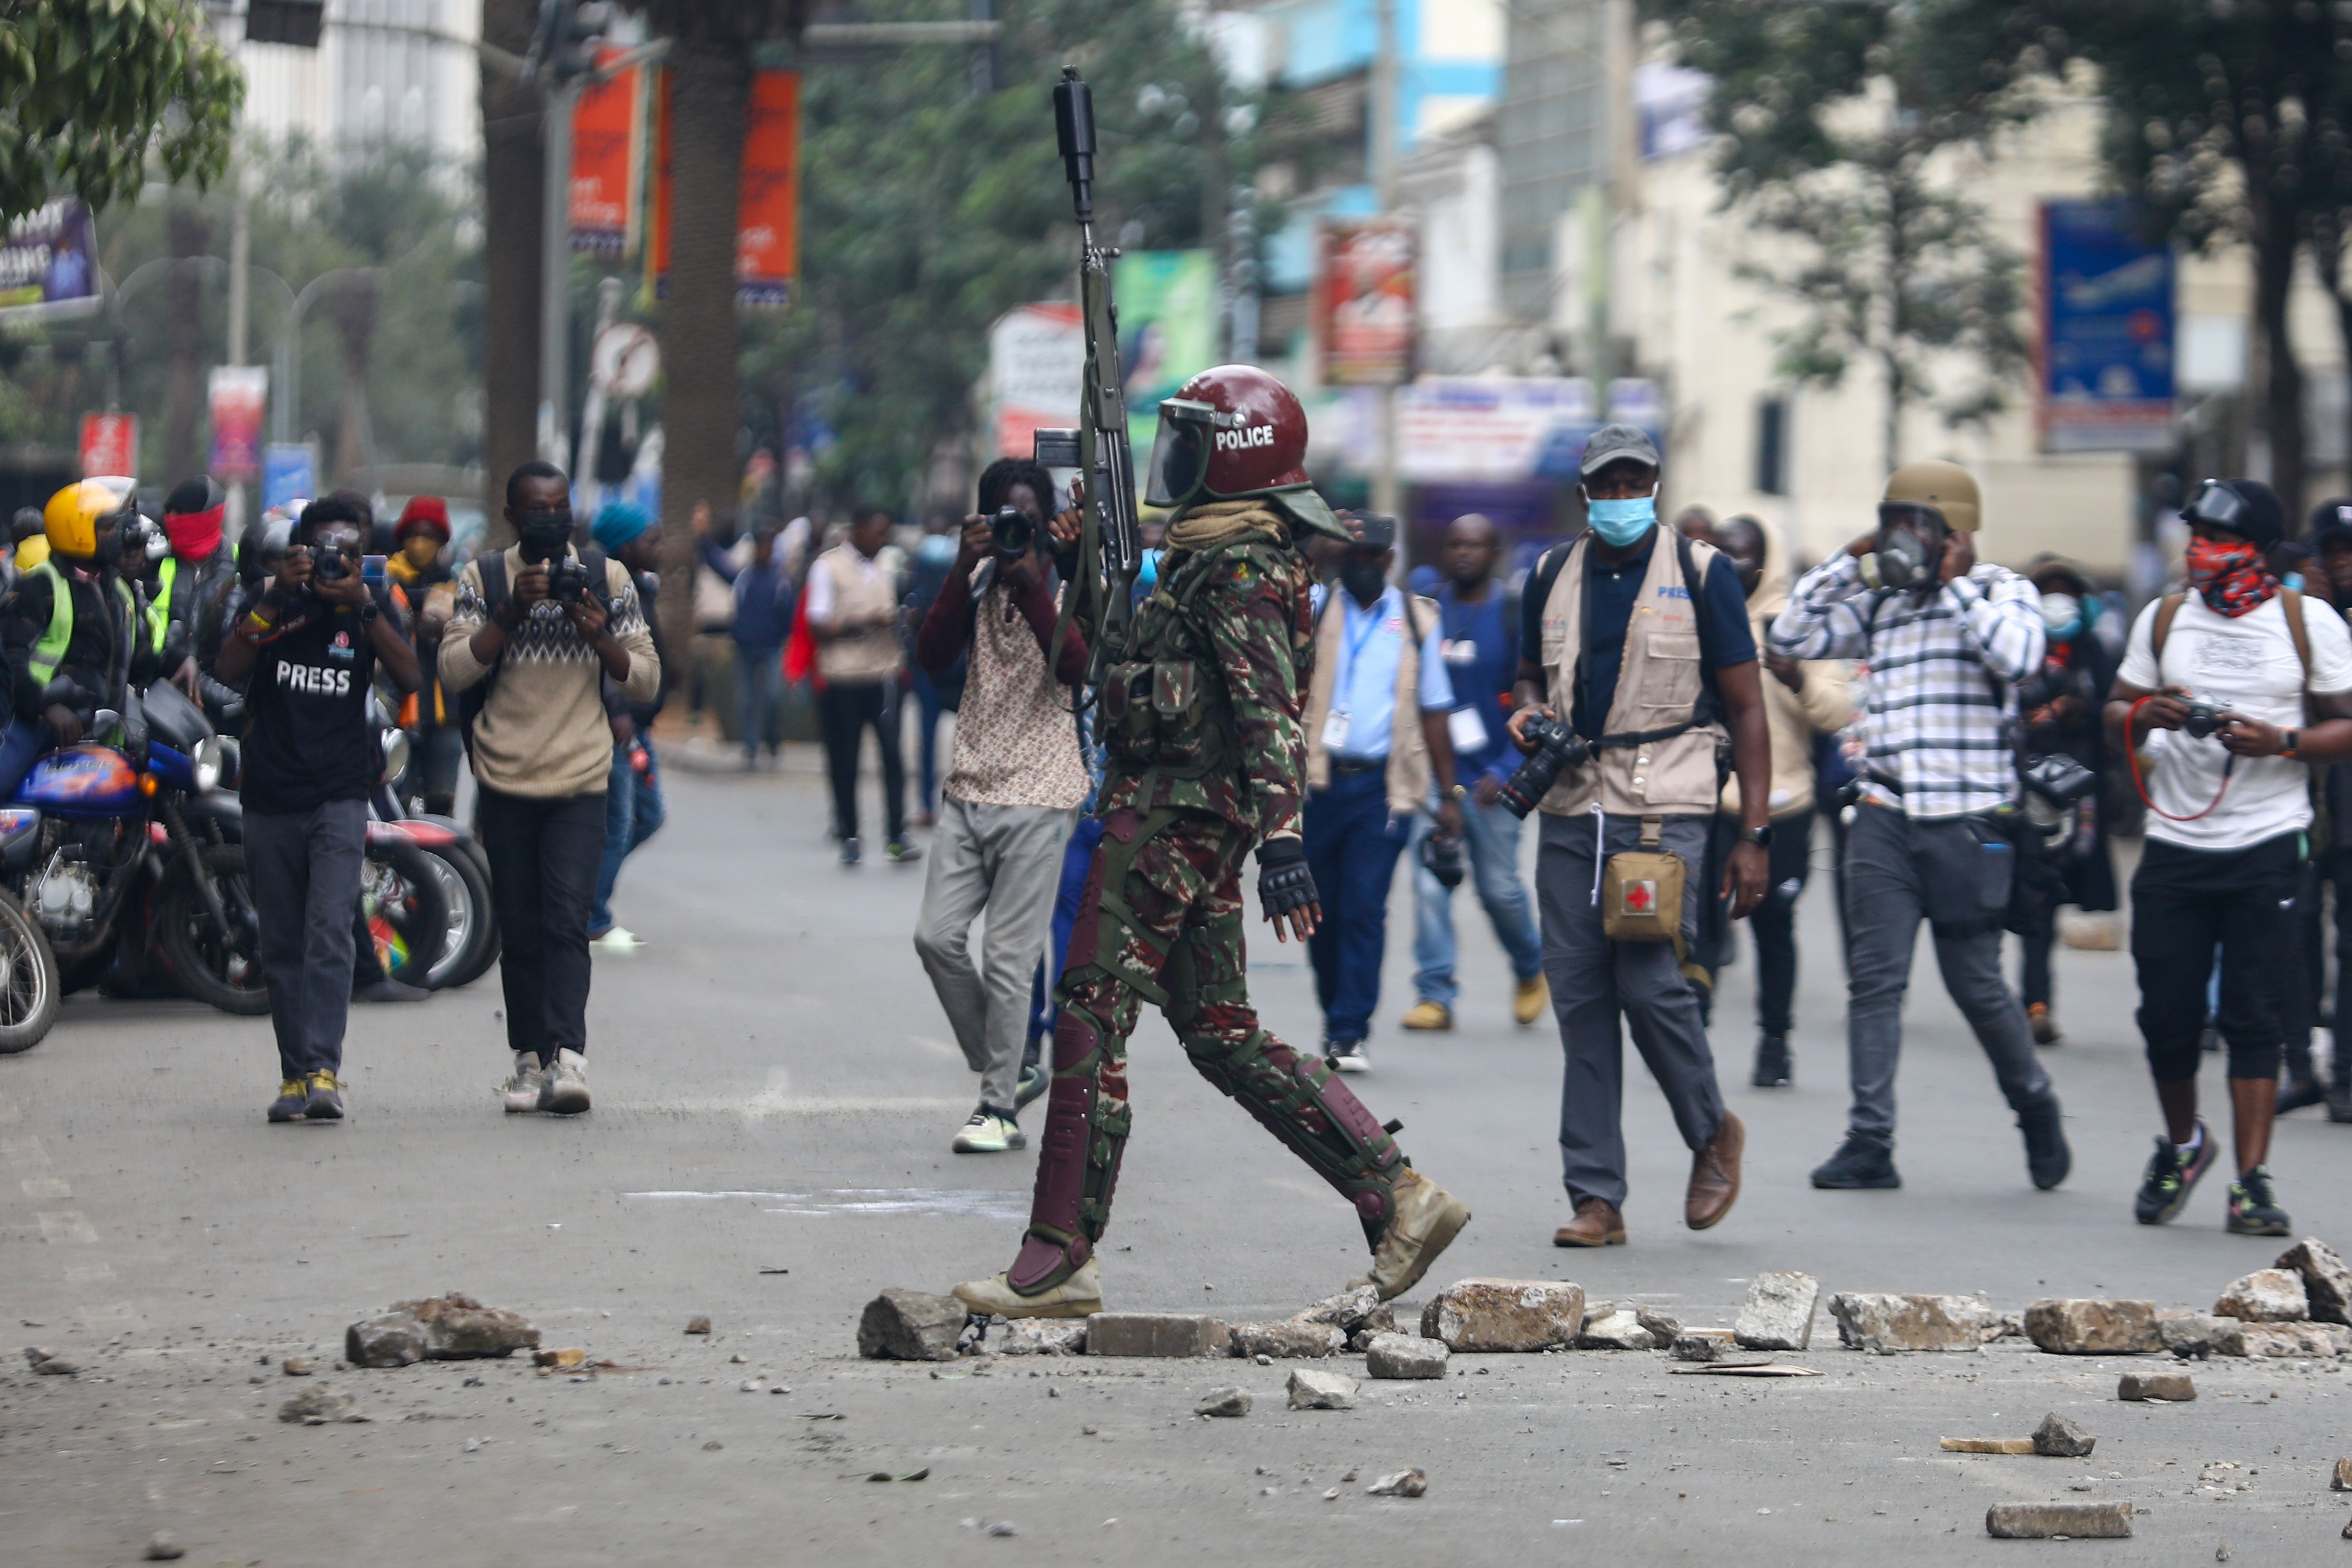 Kenyako polizia agente bat zerga erreformen aurkako protestetan, Nairobin, atzo. DANIEL IRUNGU / EFE